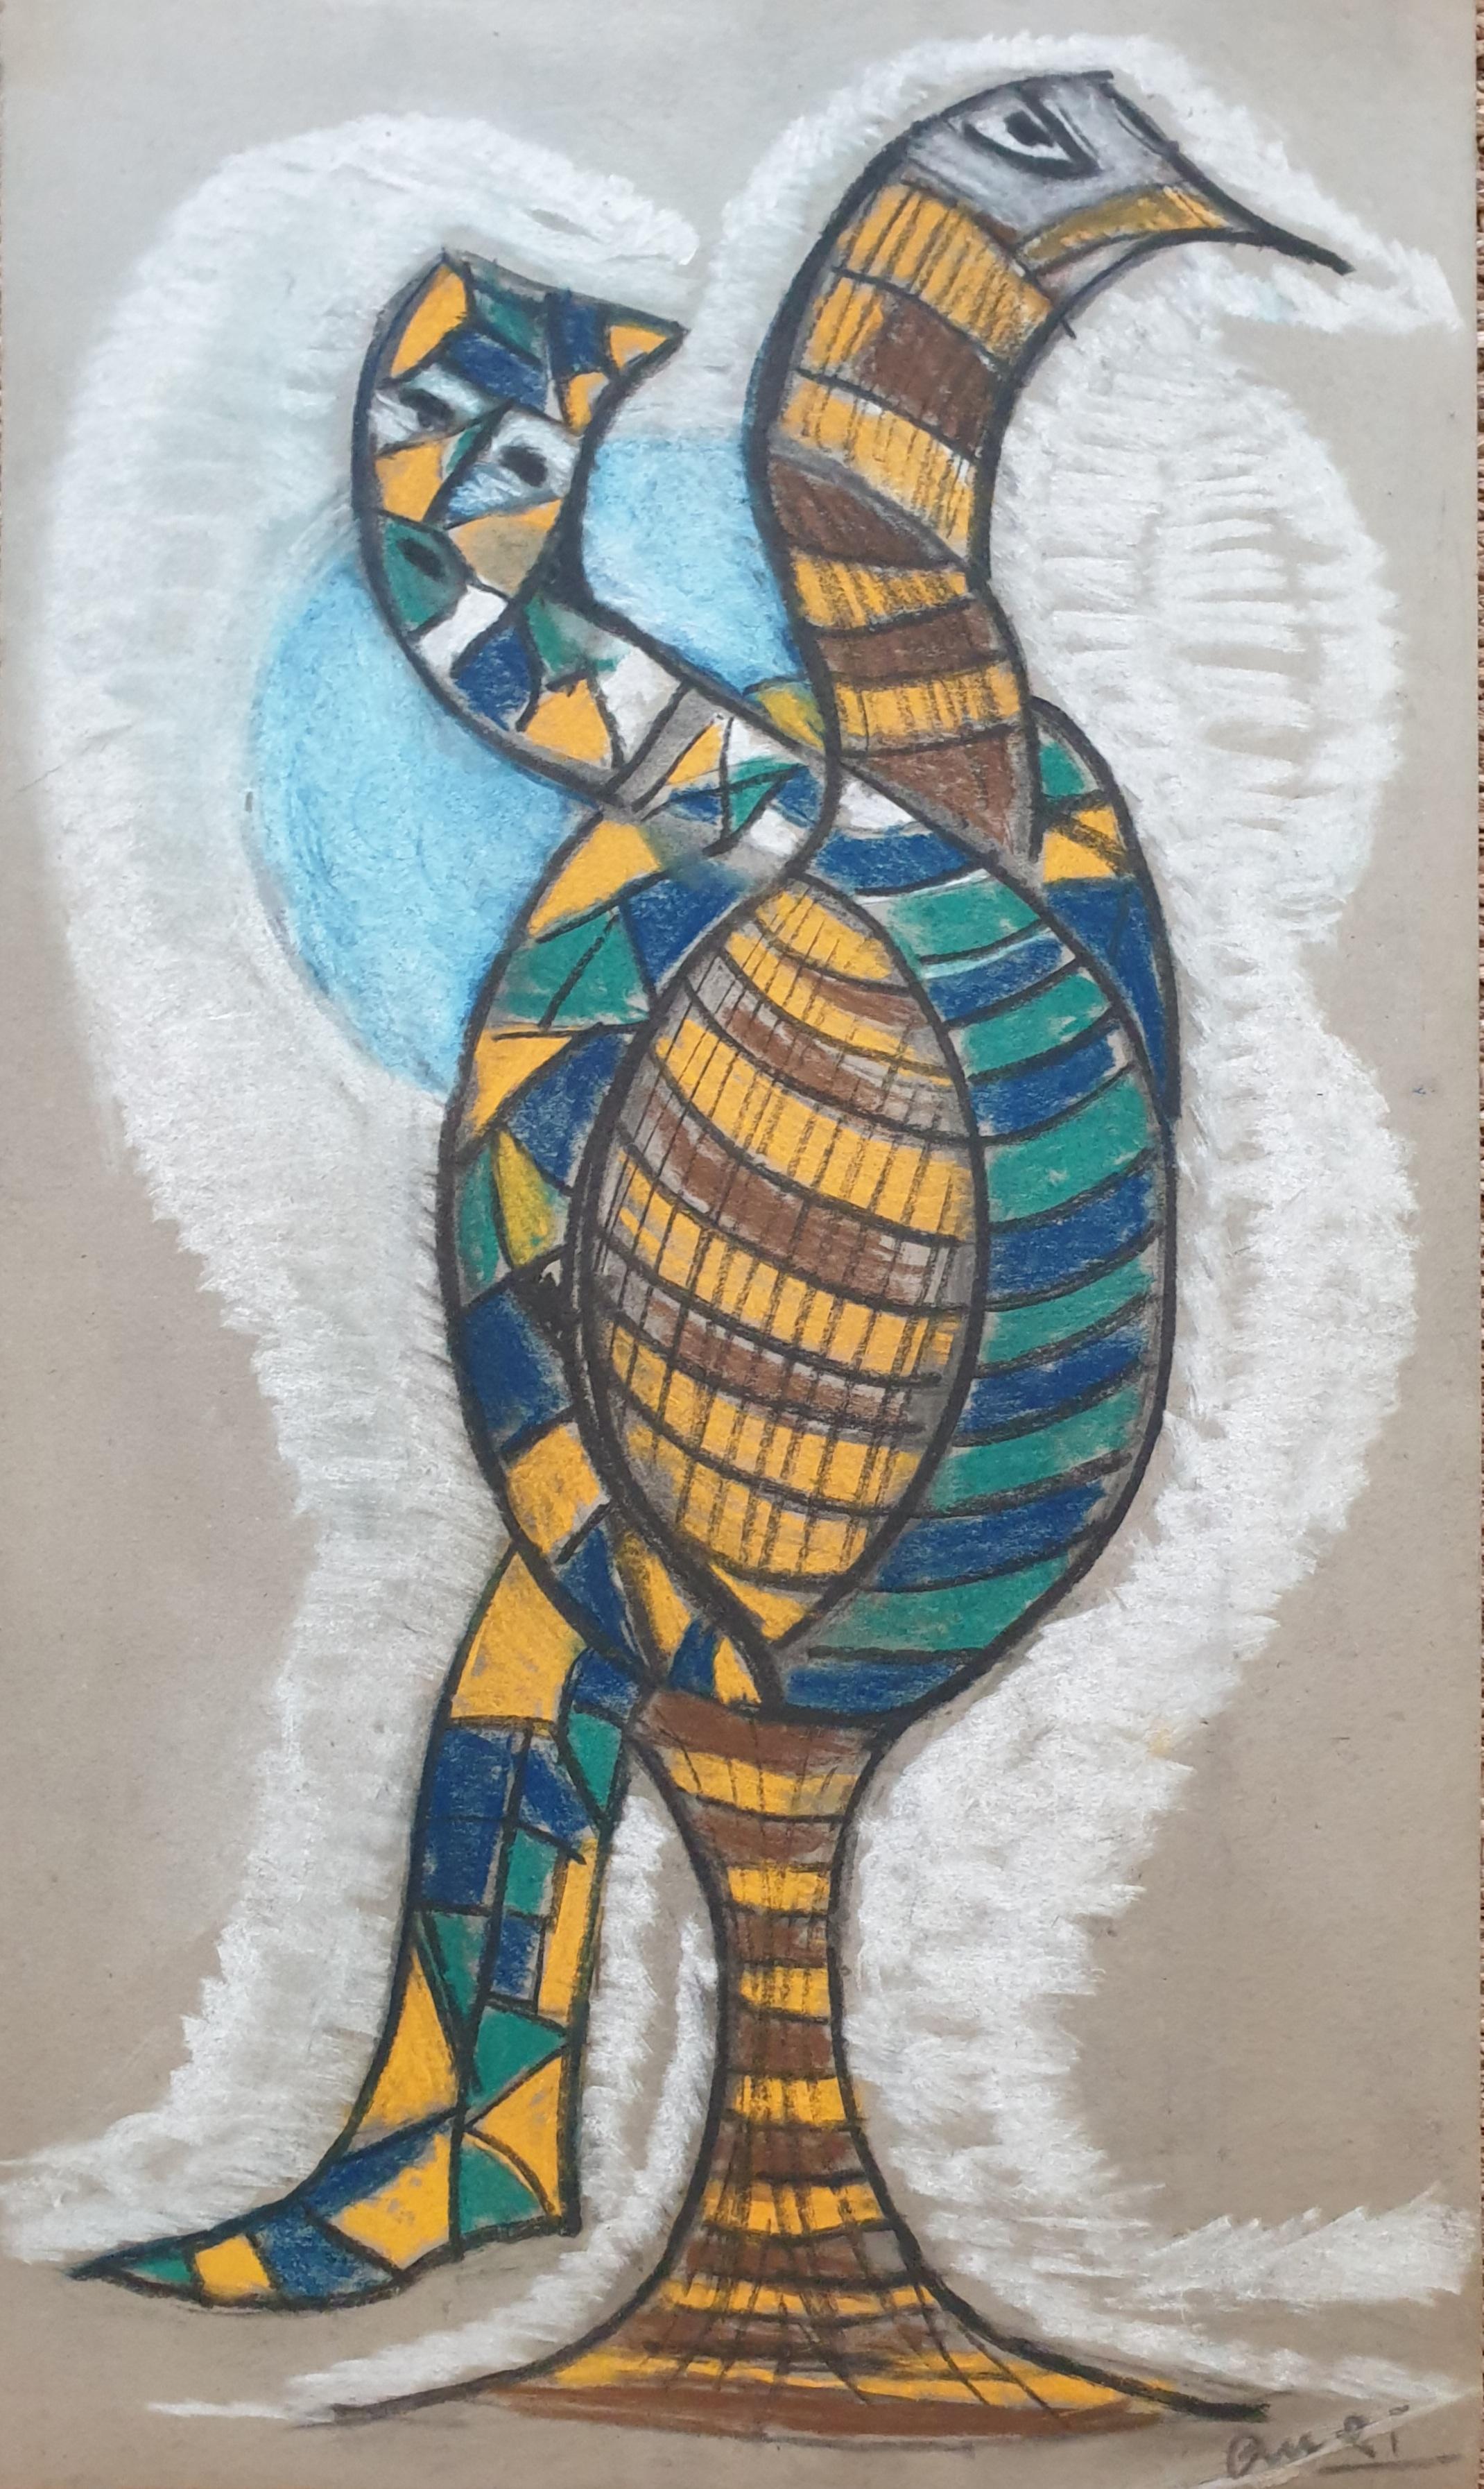 Anthropomorpher Vogel im CoBrA-Stil des expressionistischen Expressionismus. Chalk auf Papier.